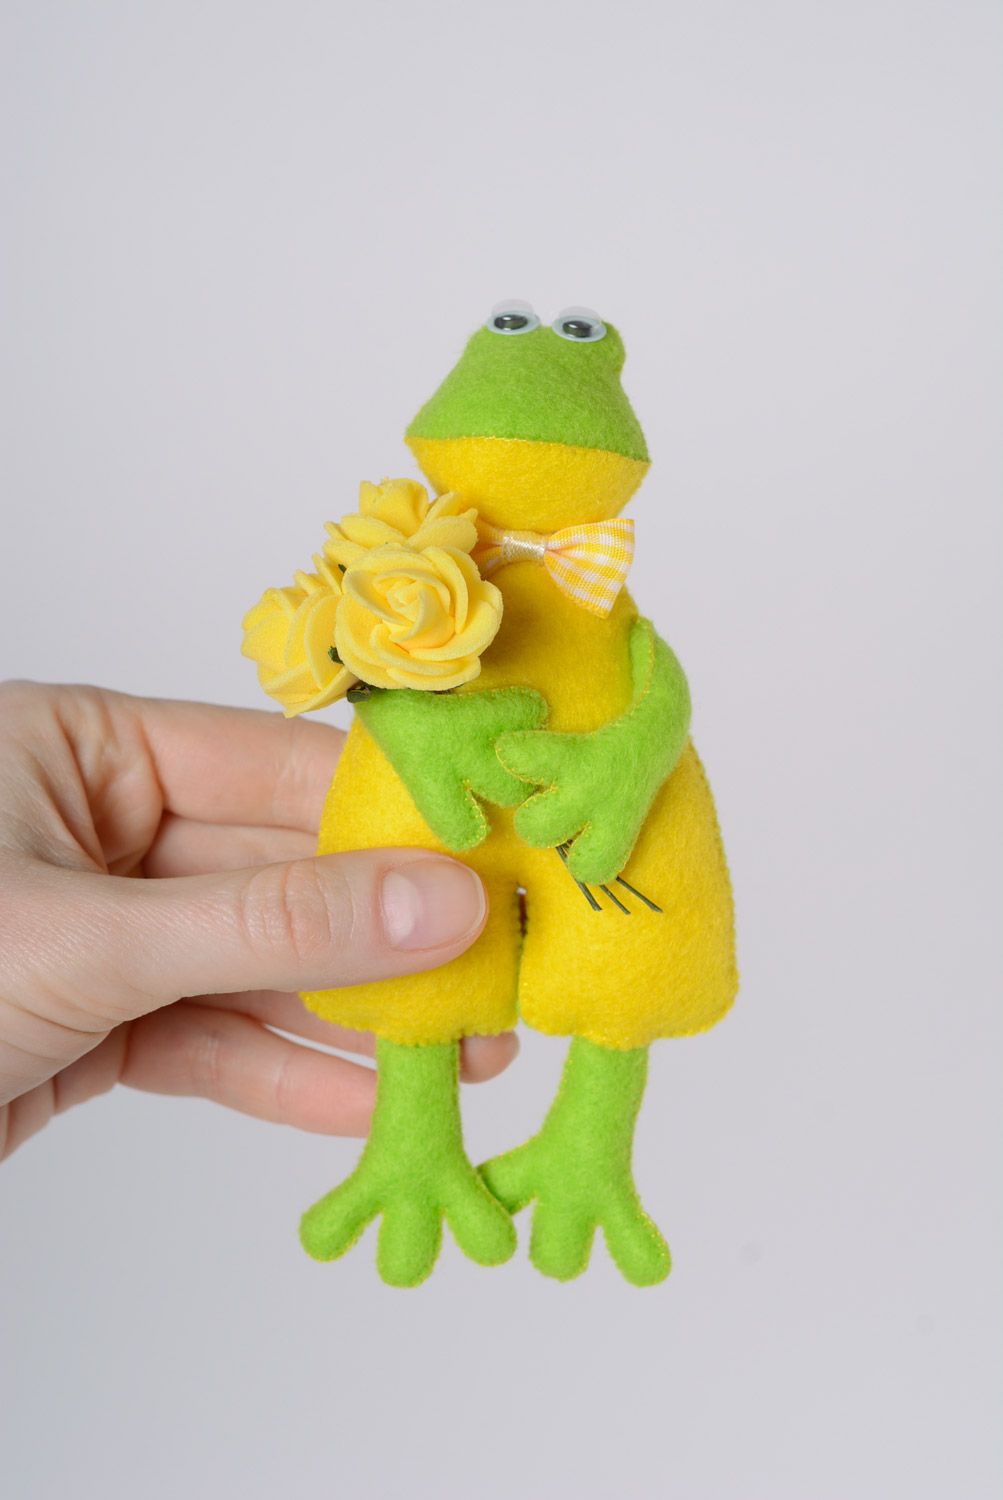 Jouet mou amusant fait main vert jaune en feutre petite grenouille sympa photo 5